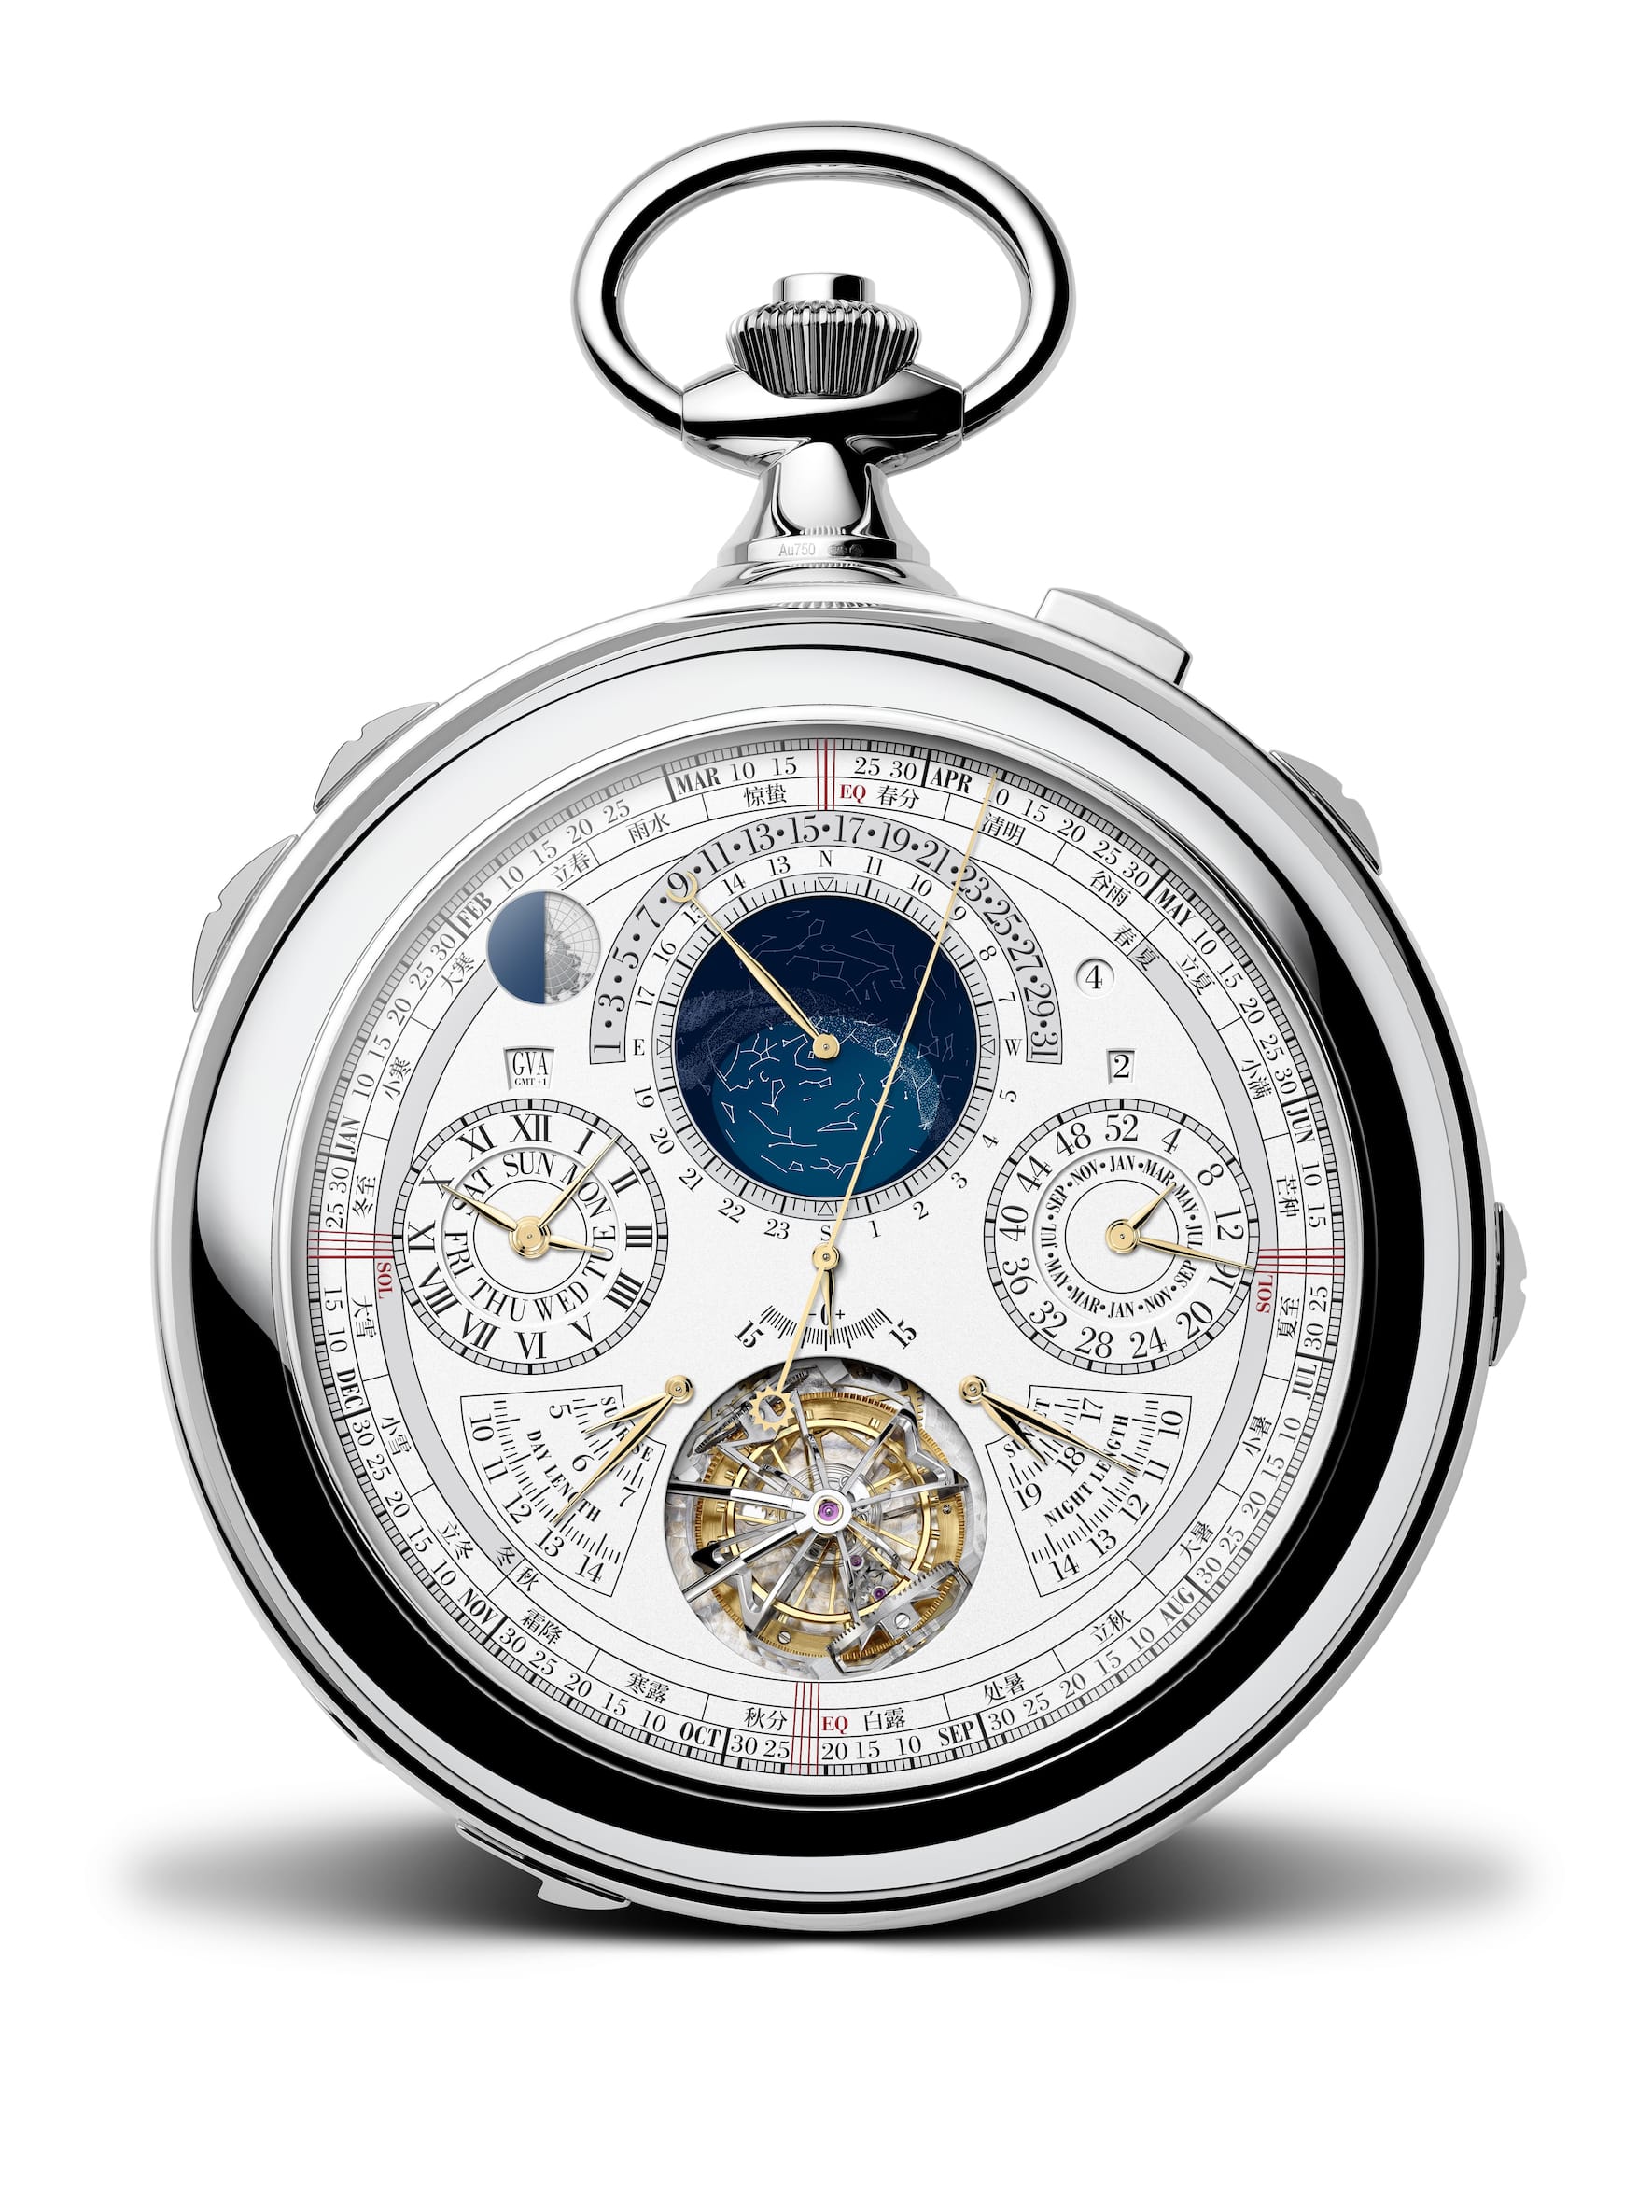 Watches & Wonders: Vacheron Constantin bringt die komplexeste Uhr der ...